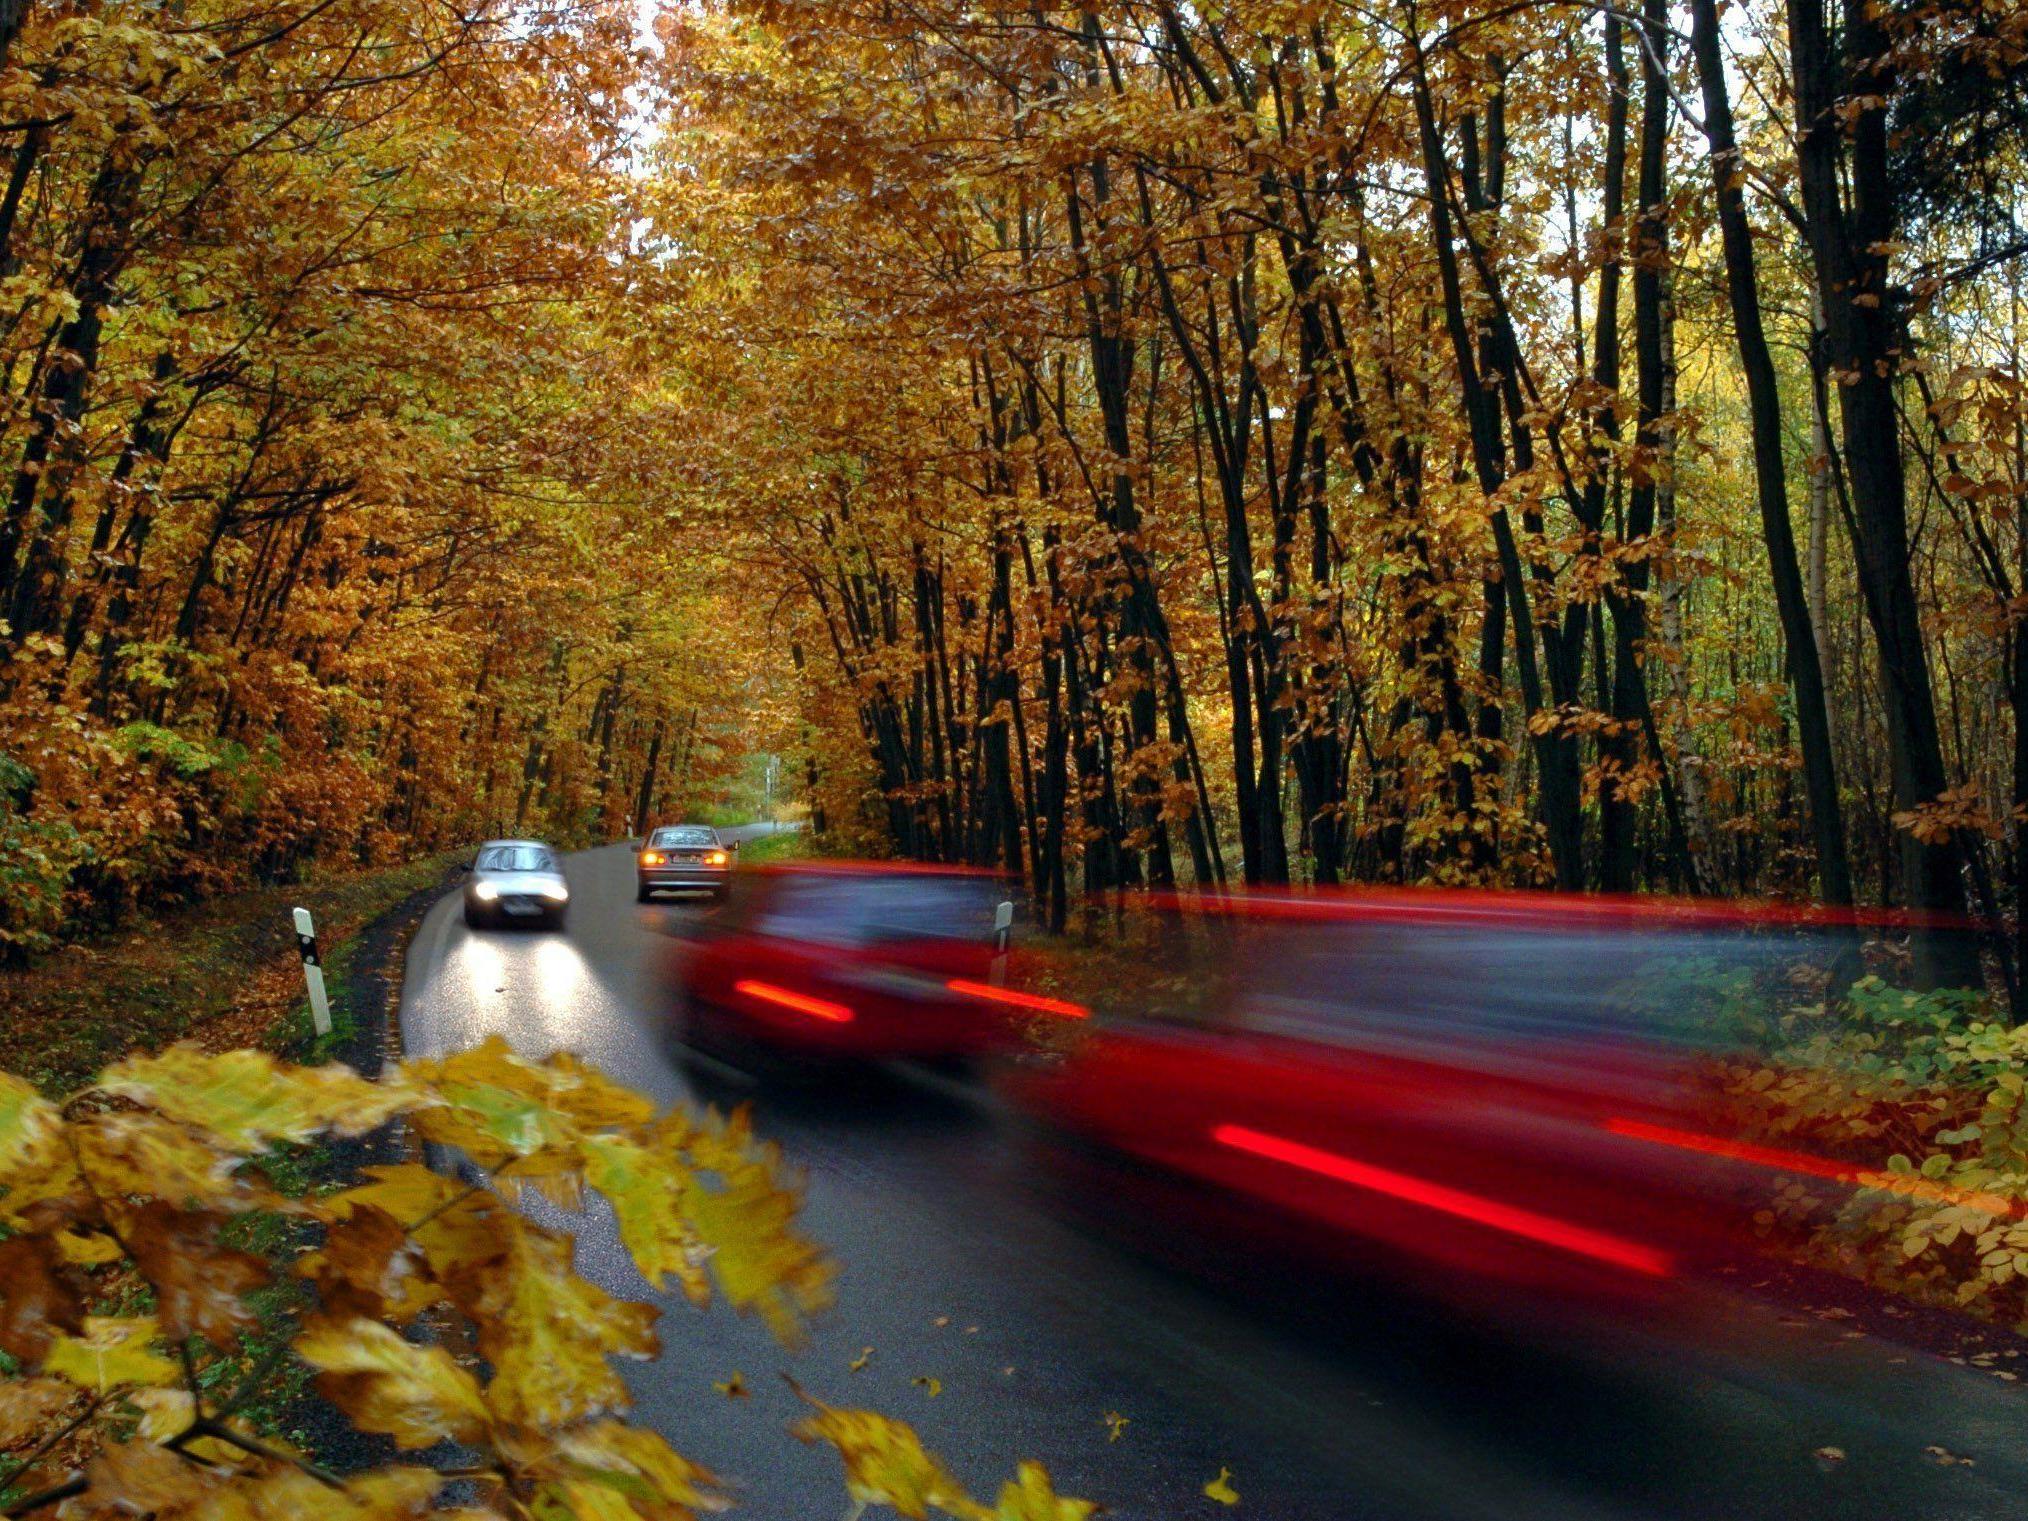 Fahren Sie im Herbst vorsichtiger!